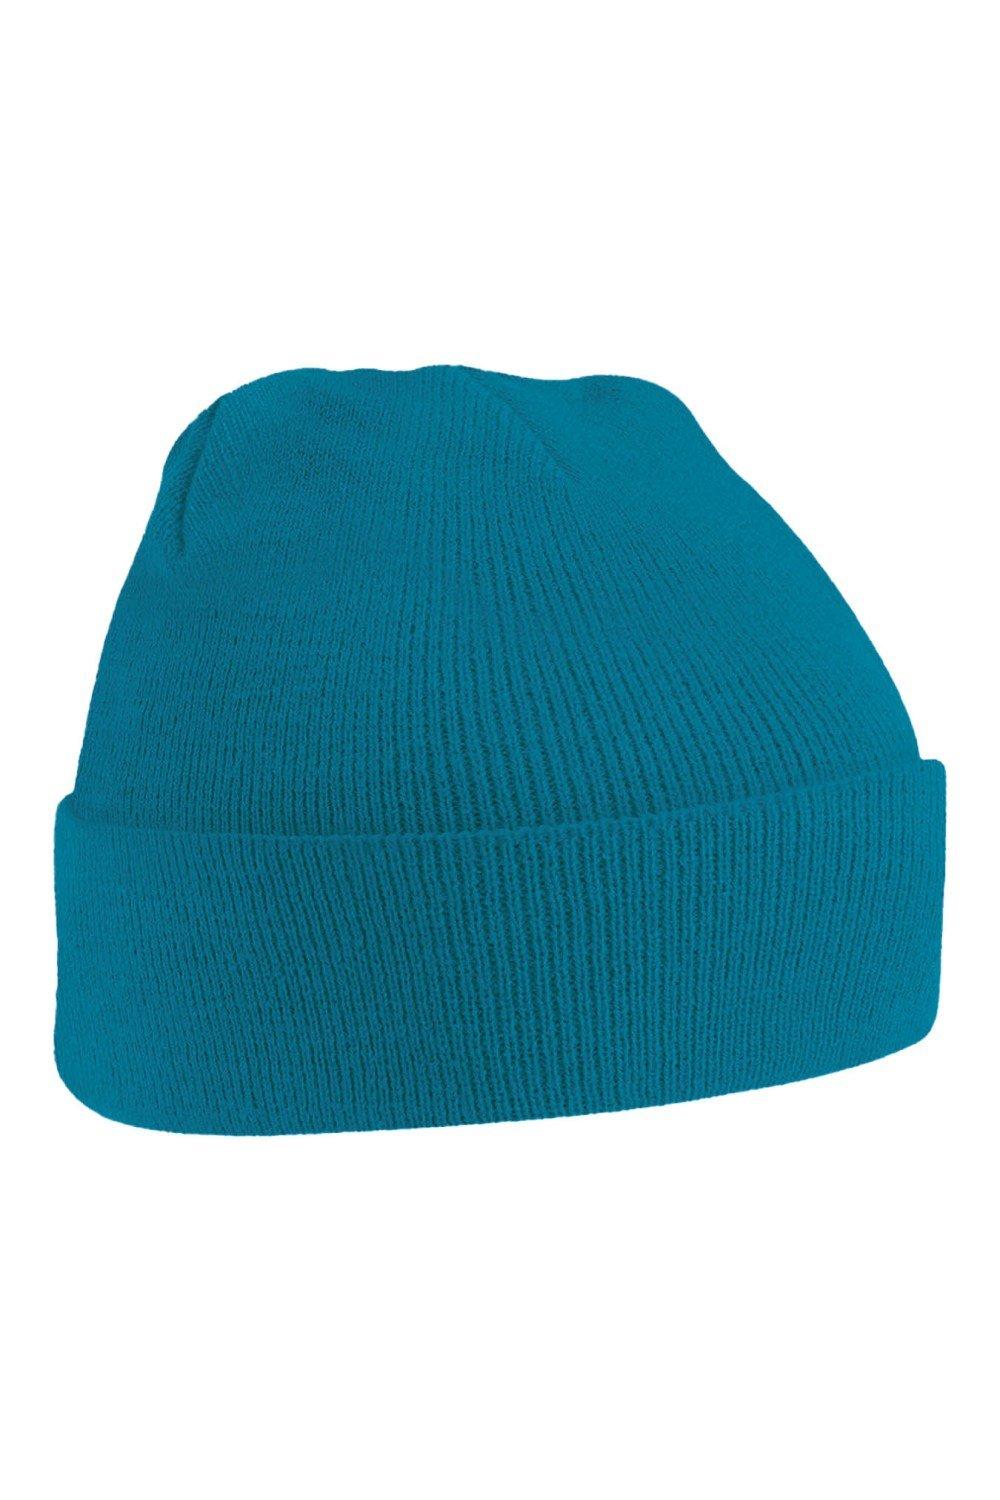 Оригинальная зимняя шапка-бини с манжетами Beechfield, синий оригинальная зимняя шапка бини с манжетами beechfield красный